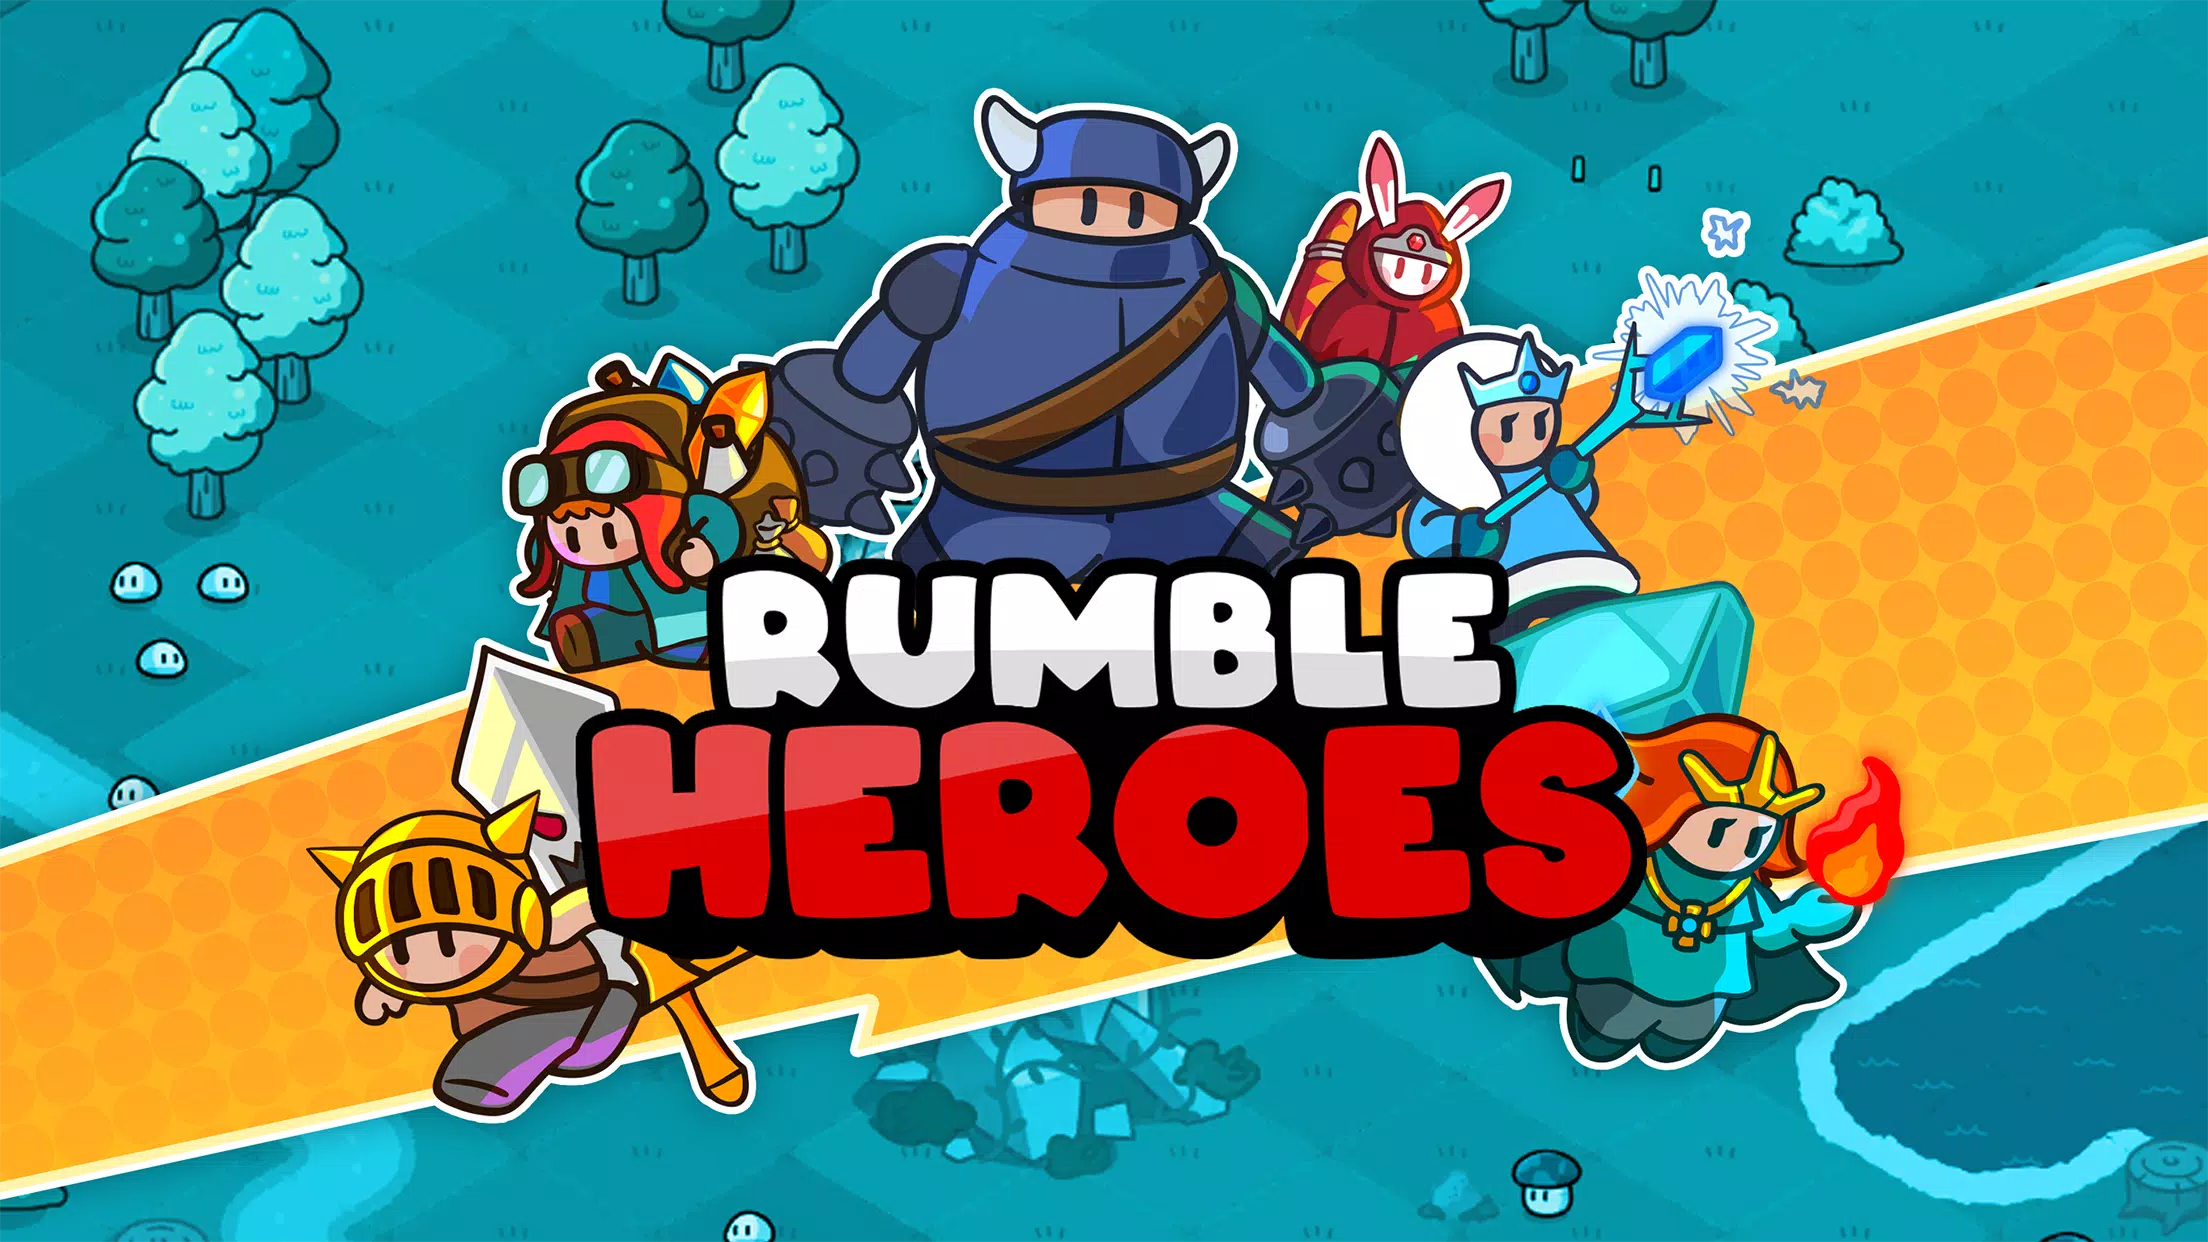 Rumble Heroes : Adventure RPG APK + MOD 1.5.013 (Unlimited Money